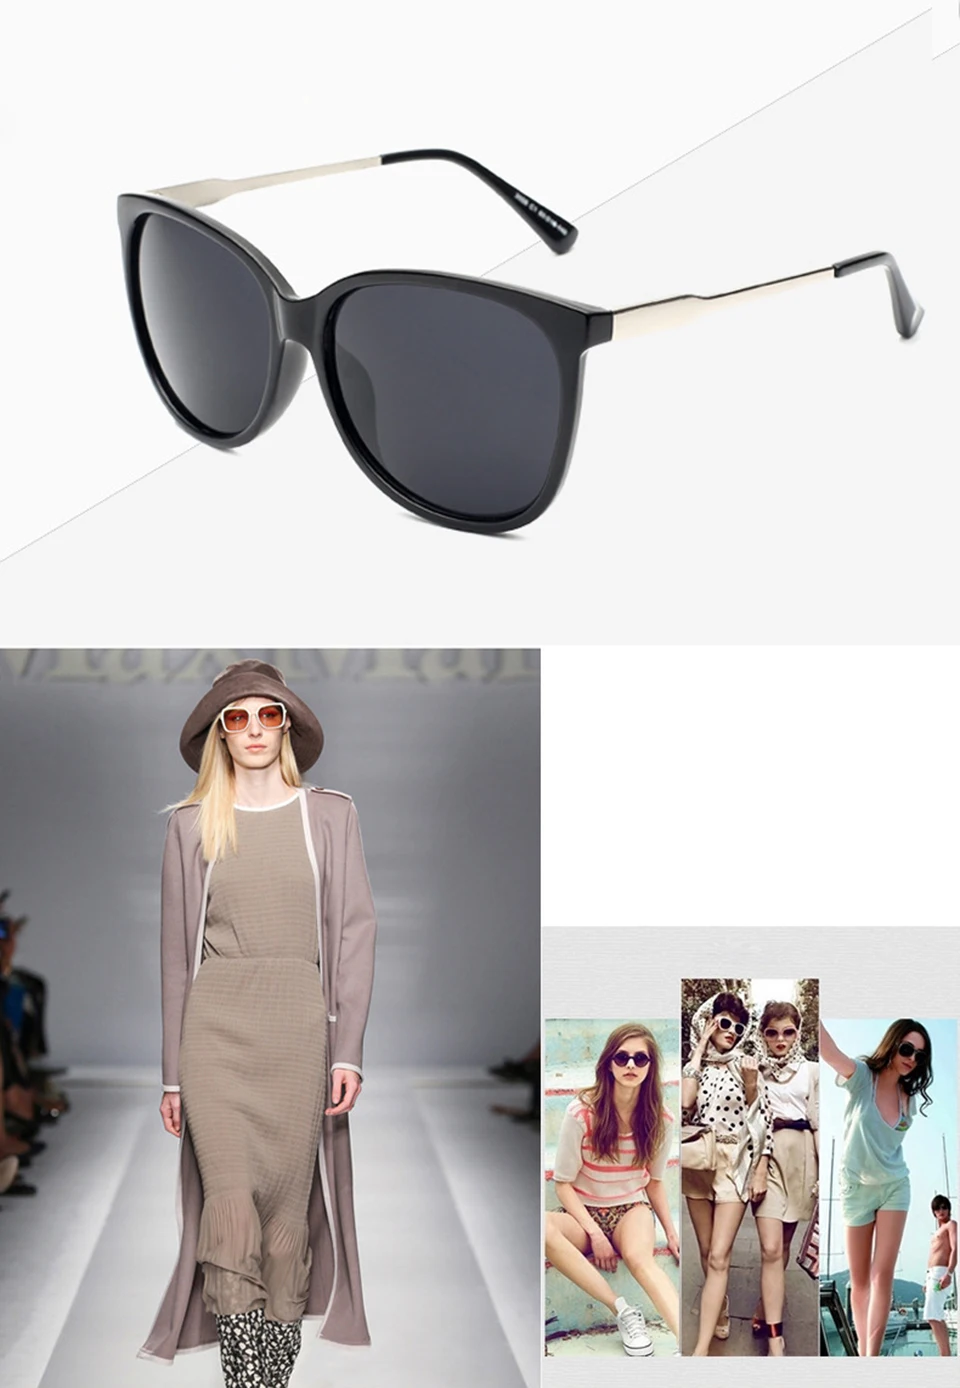 3 шт./лот ELITERA бренд Звезда стиль роскошные женские солнцезащитные очки для женщин негабаритных солнцезащитные очки Винтаж